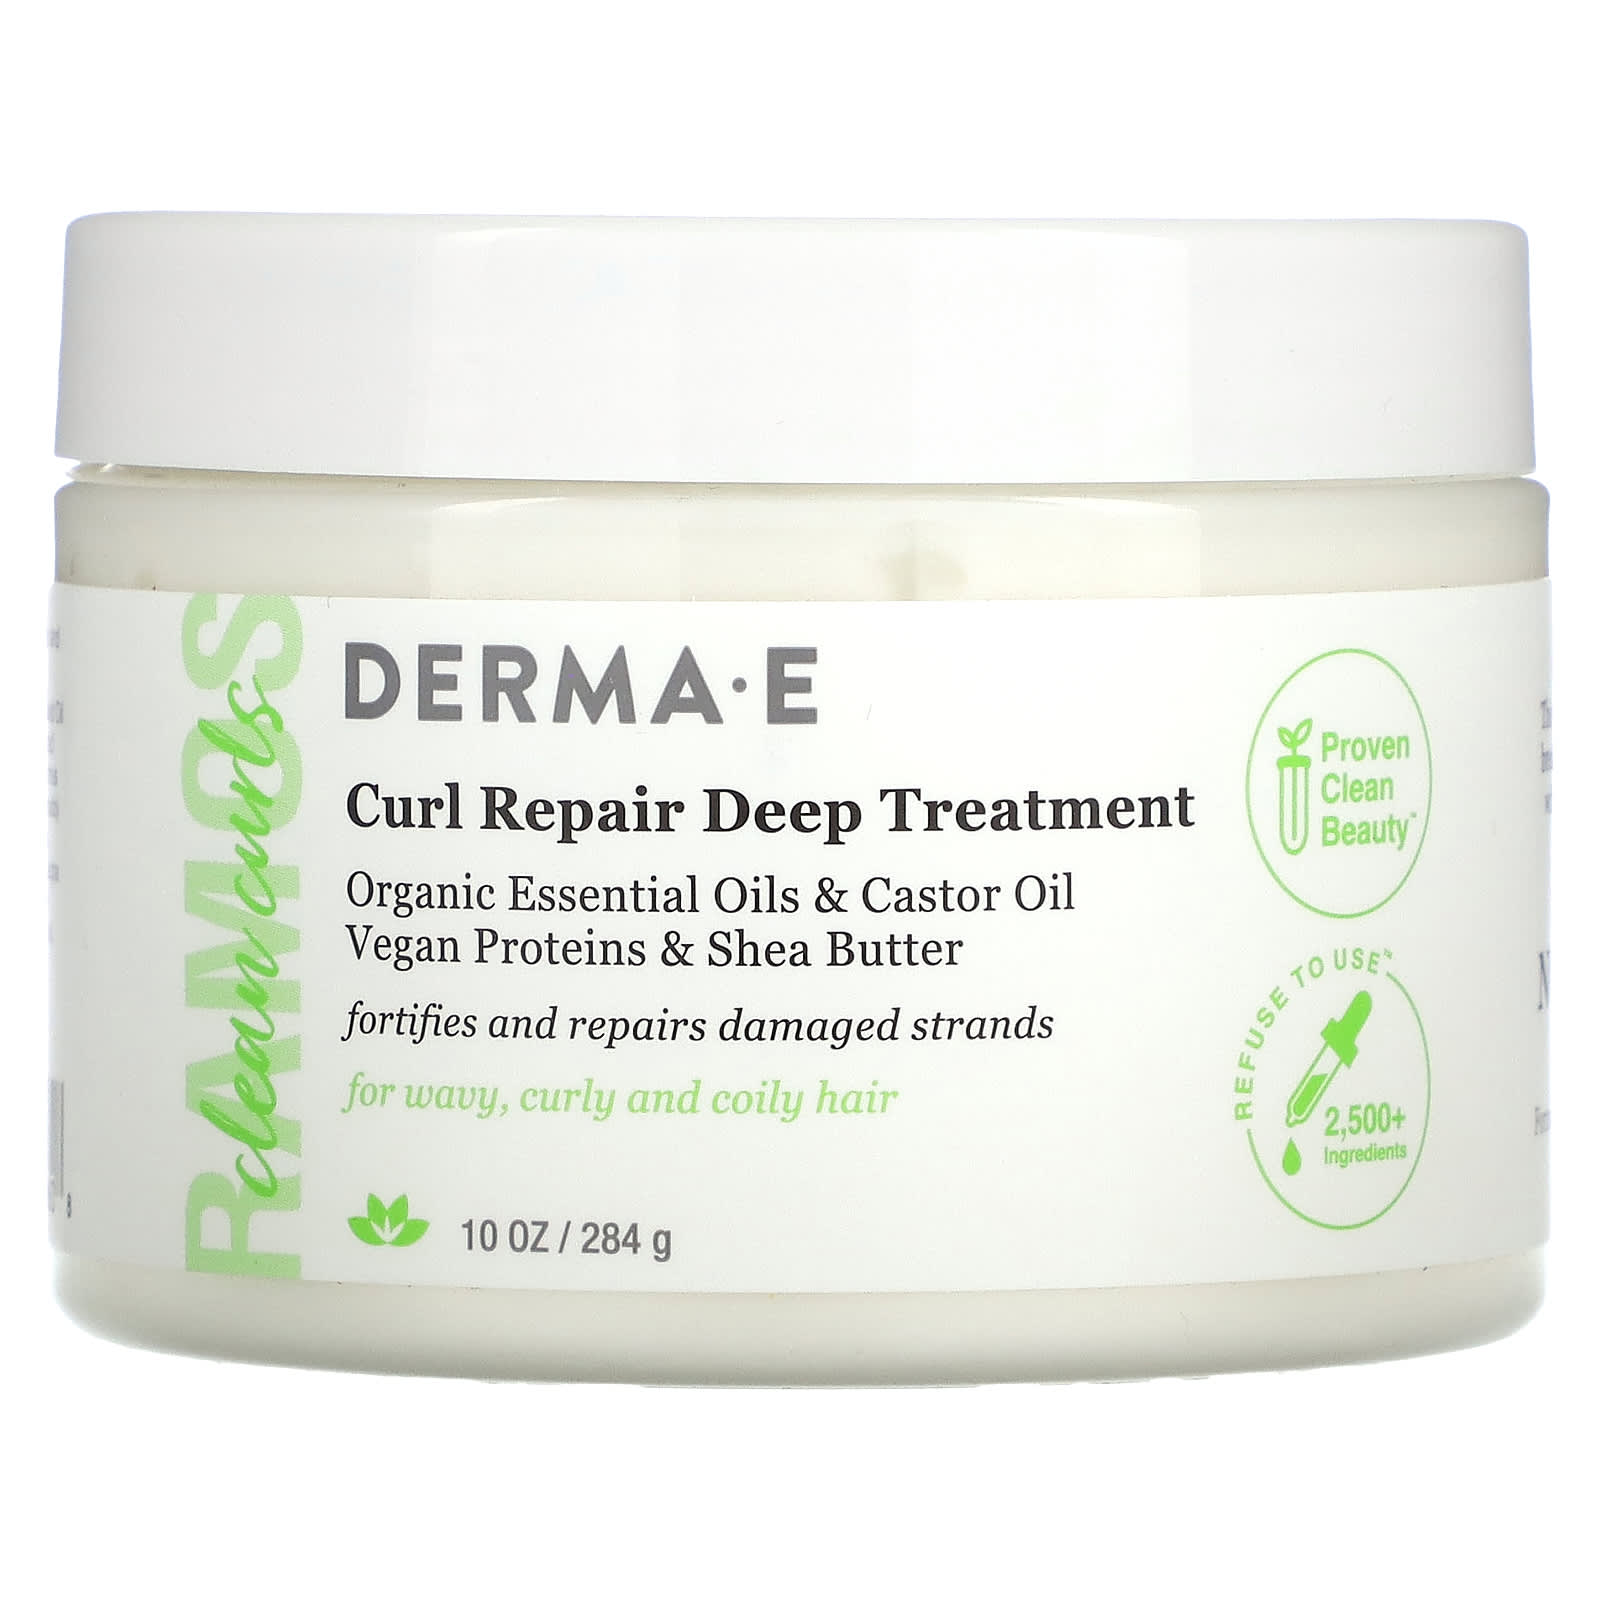 DERMA E, Ramos Clean Curls, Curl Repair Deep Treatment, 10 oz (284 g)